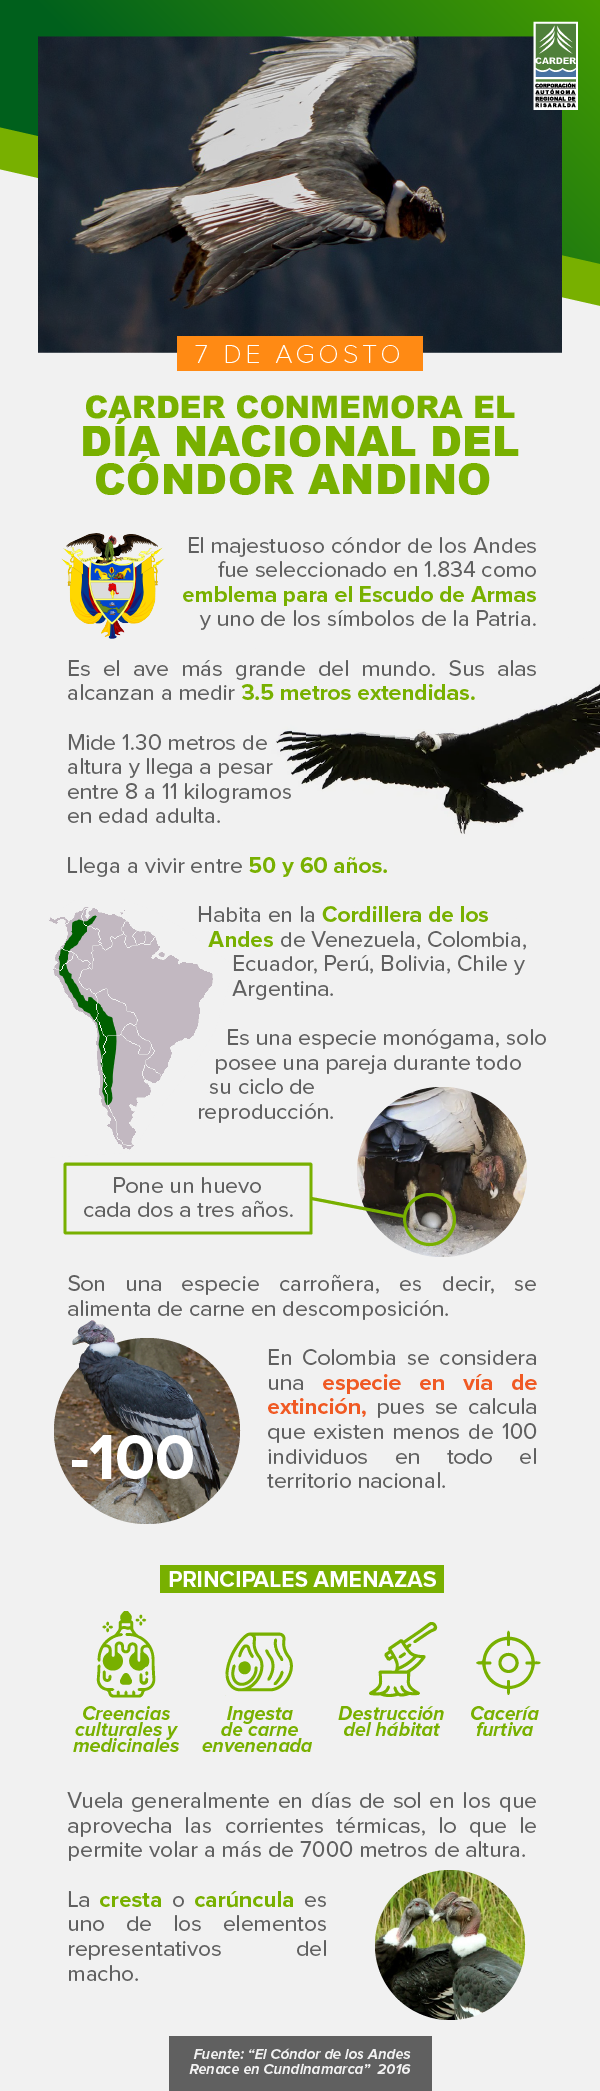 Día Nacional del Condor Andino